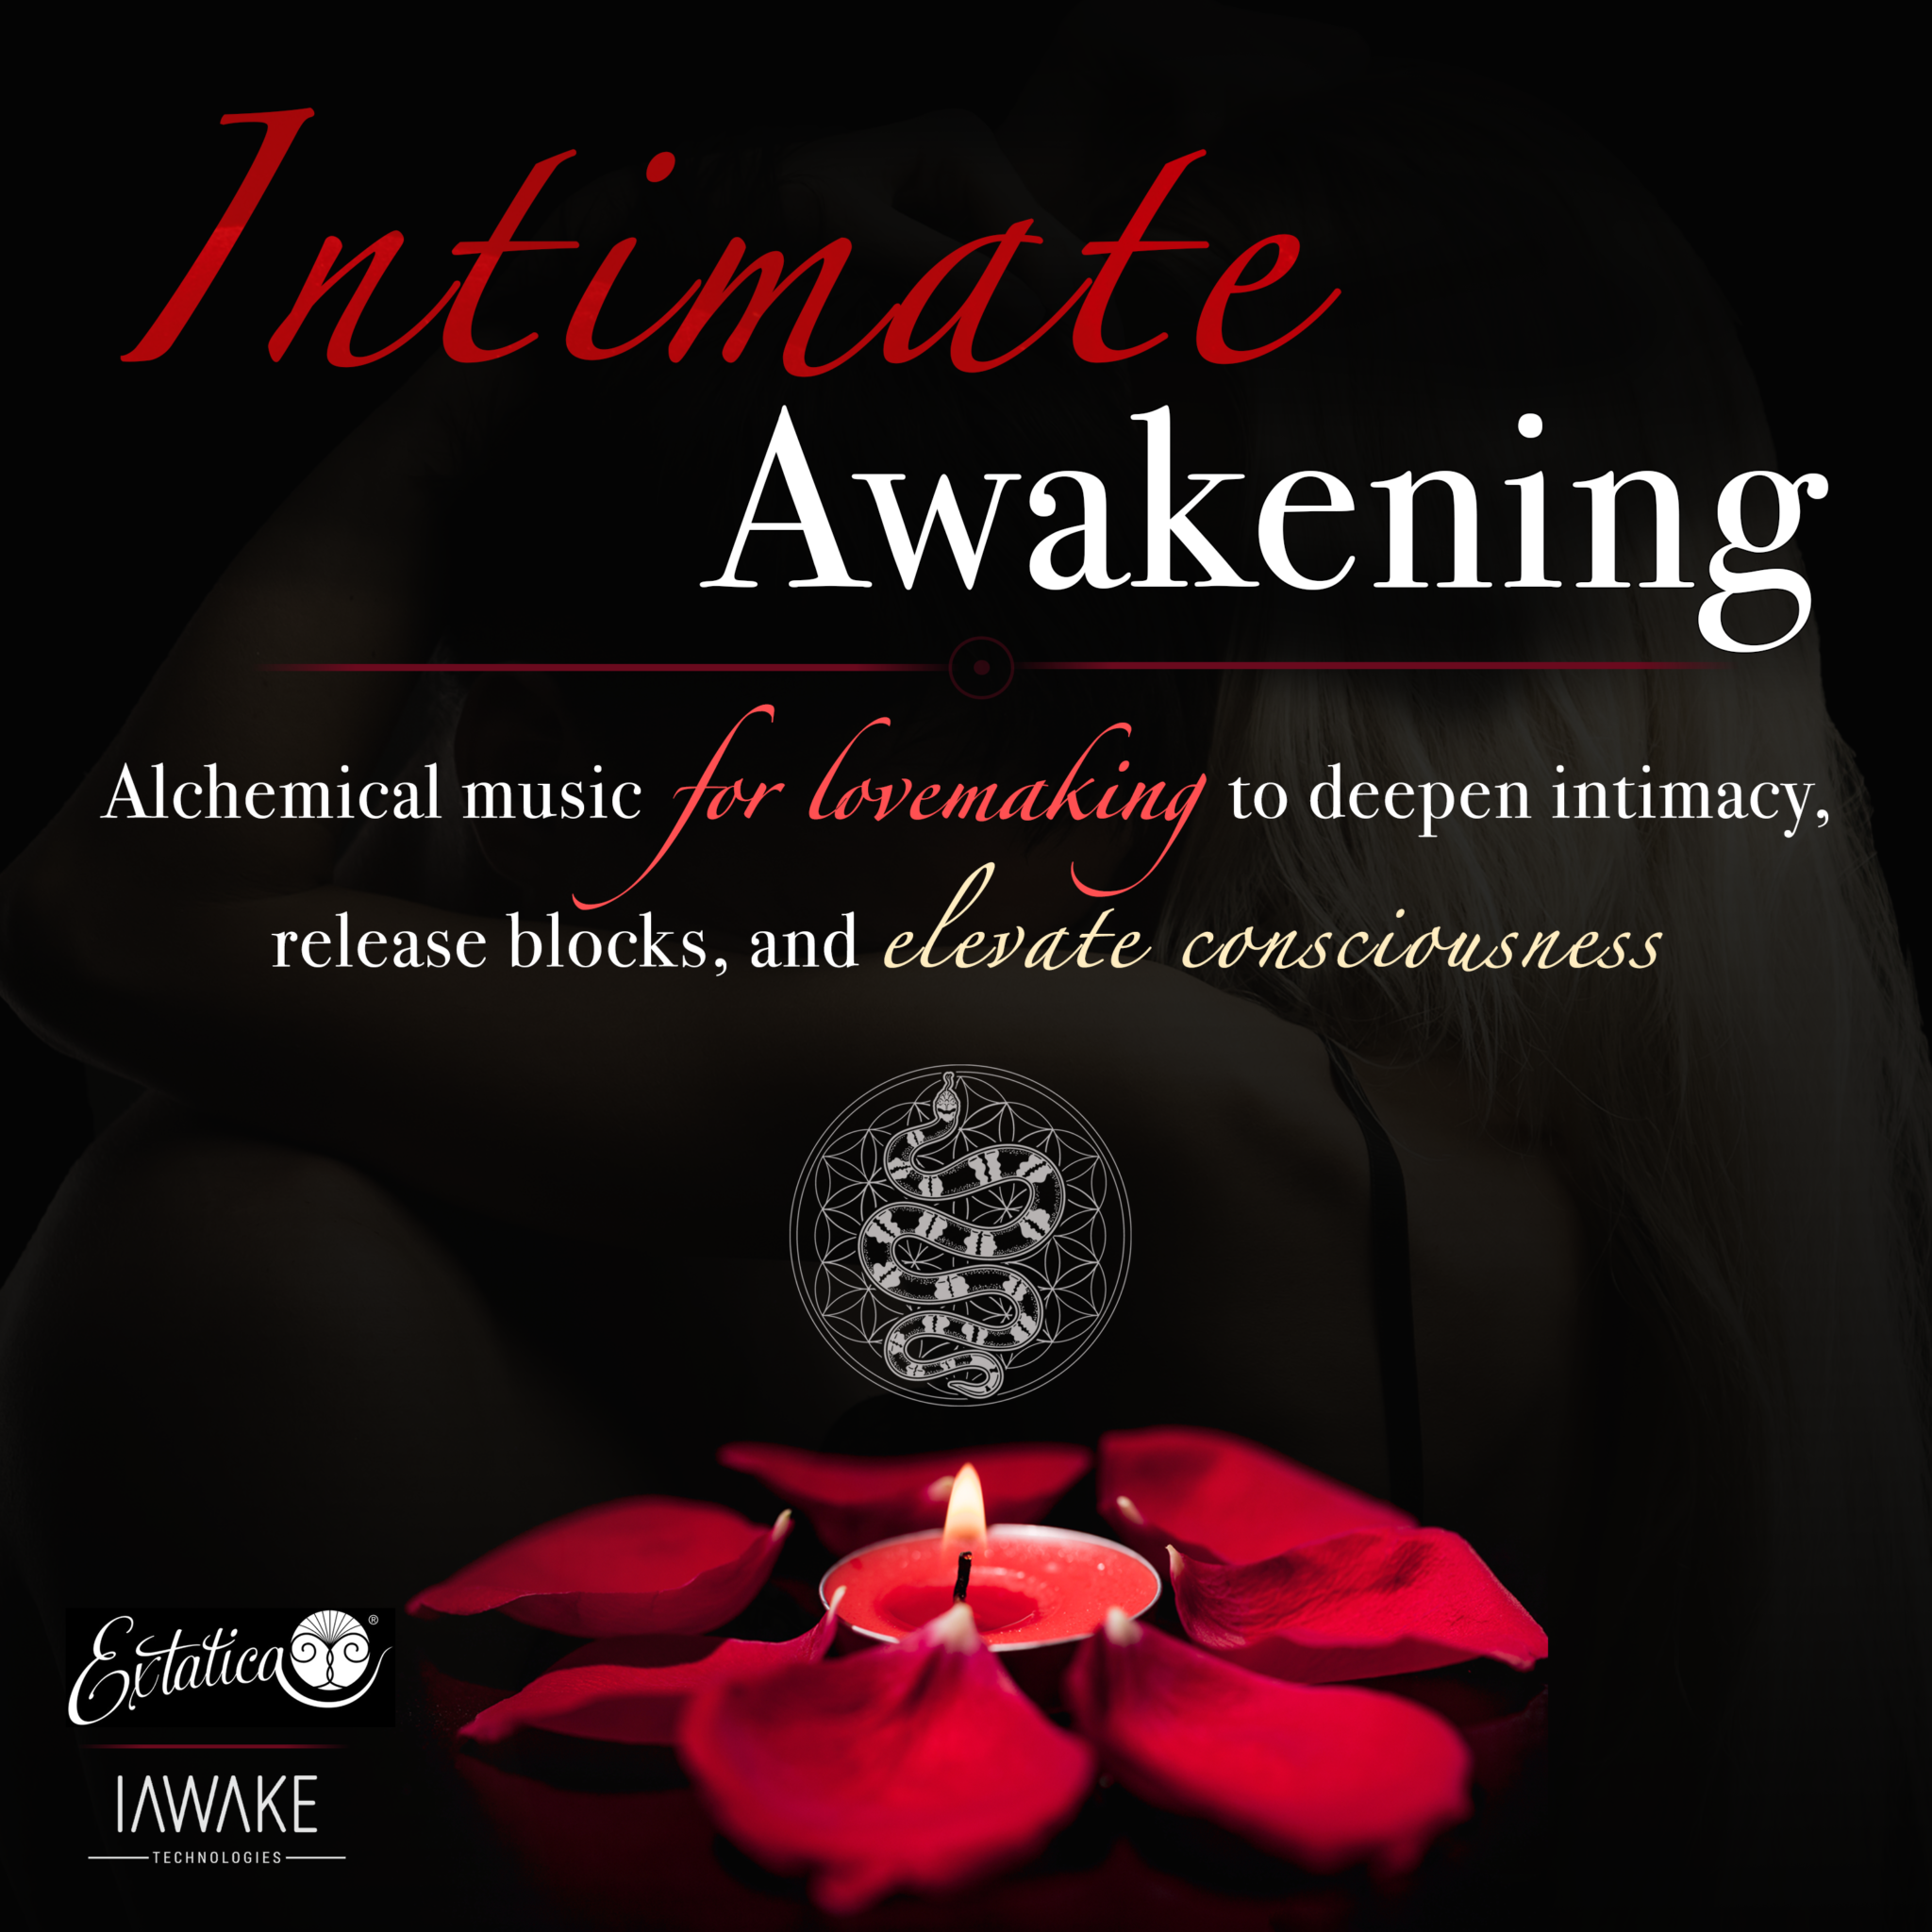 iTunes_IntimateAwakening-1400x1400-1-2048x2048